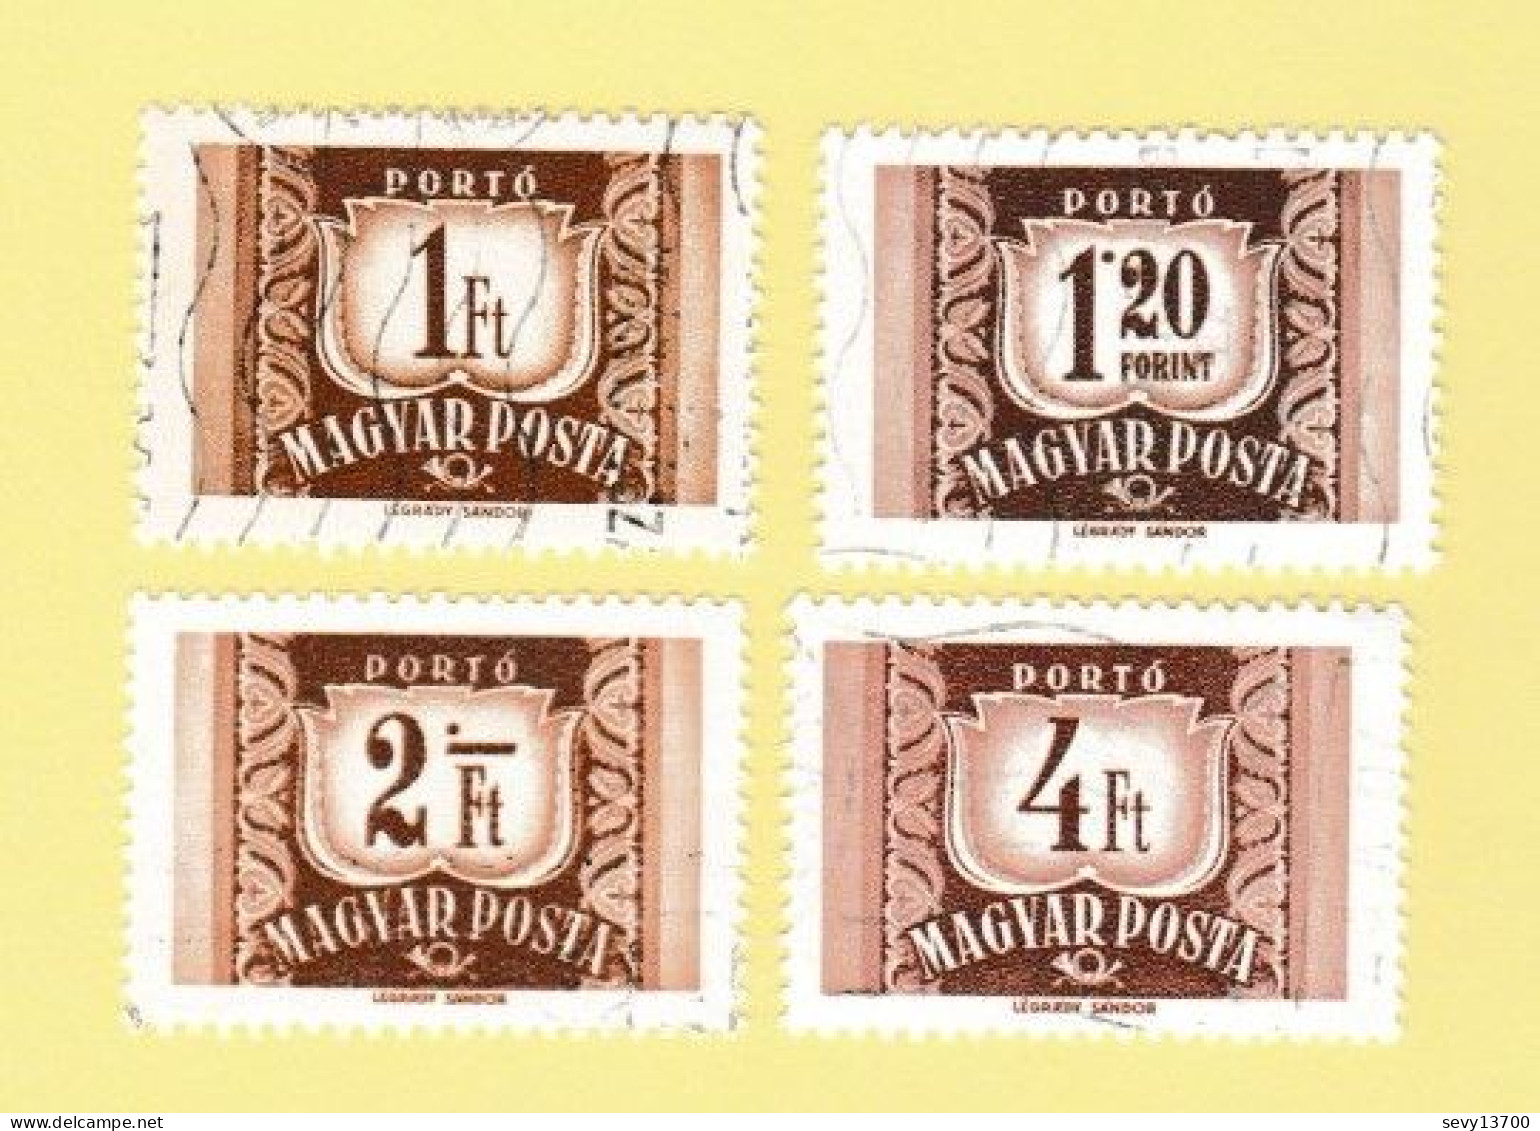 Hongrie - Magyar Posta - lot de 51 timbres taxe et de service